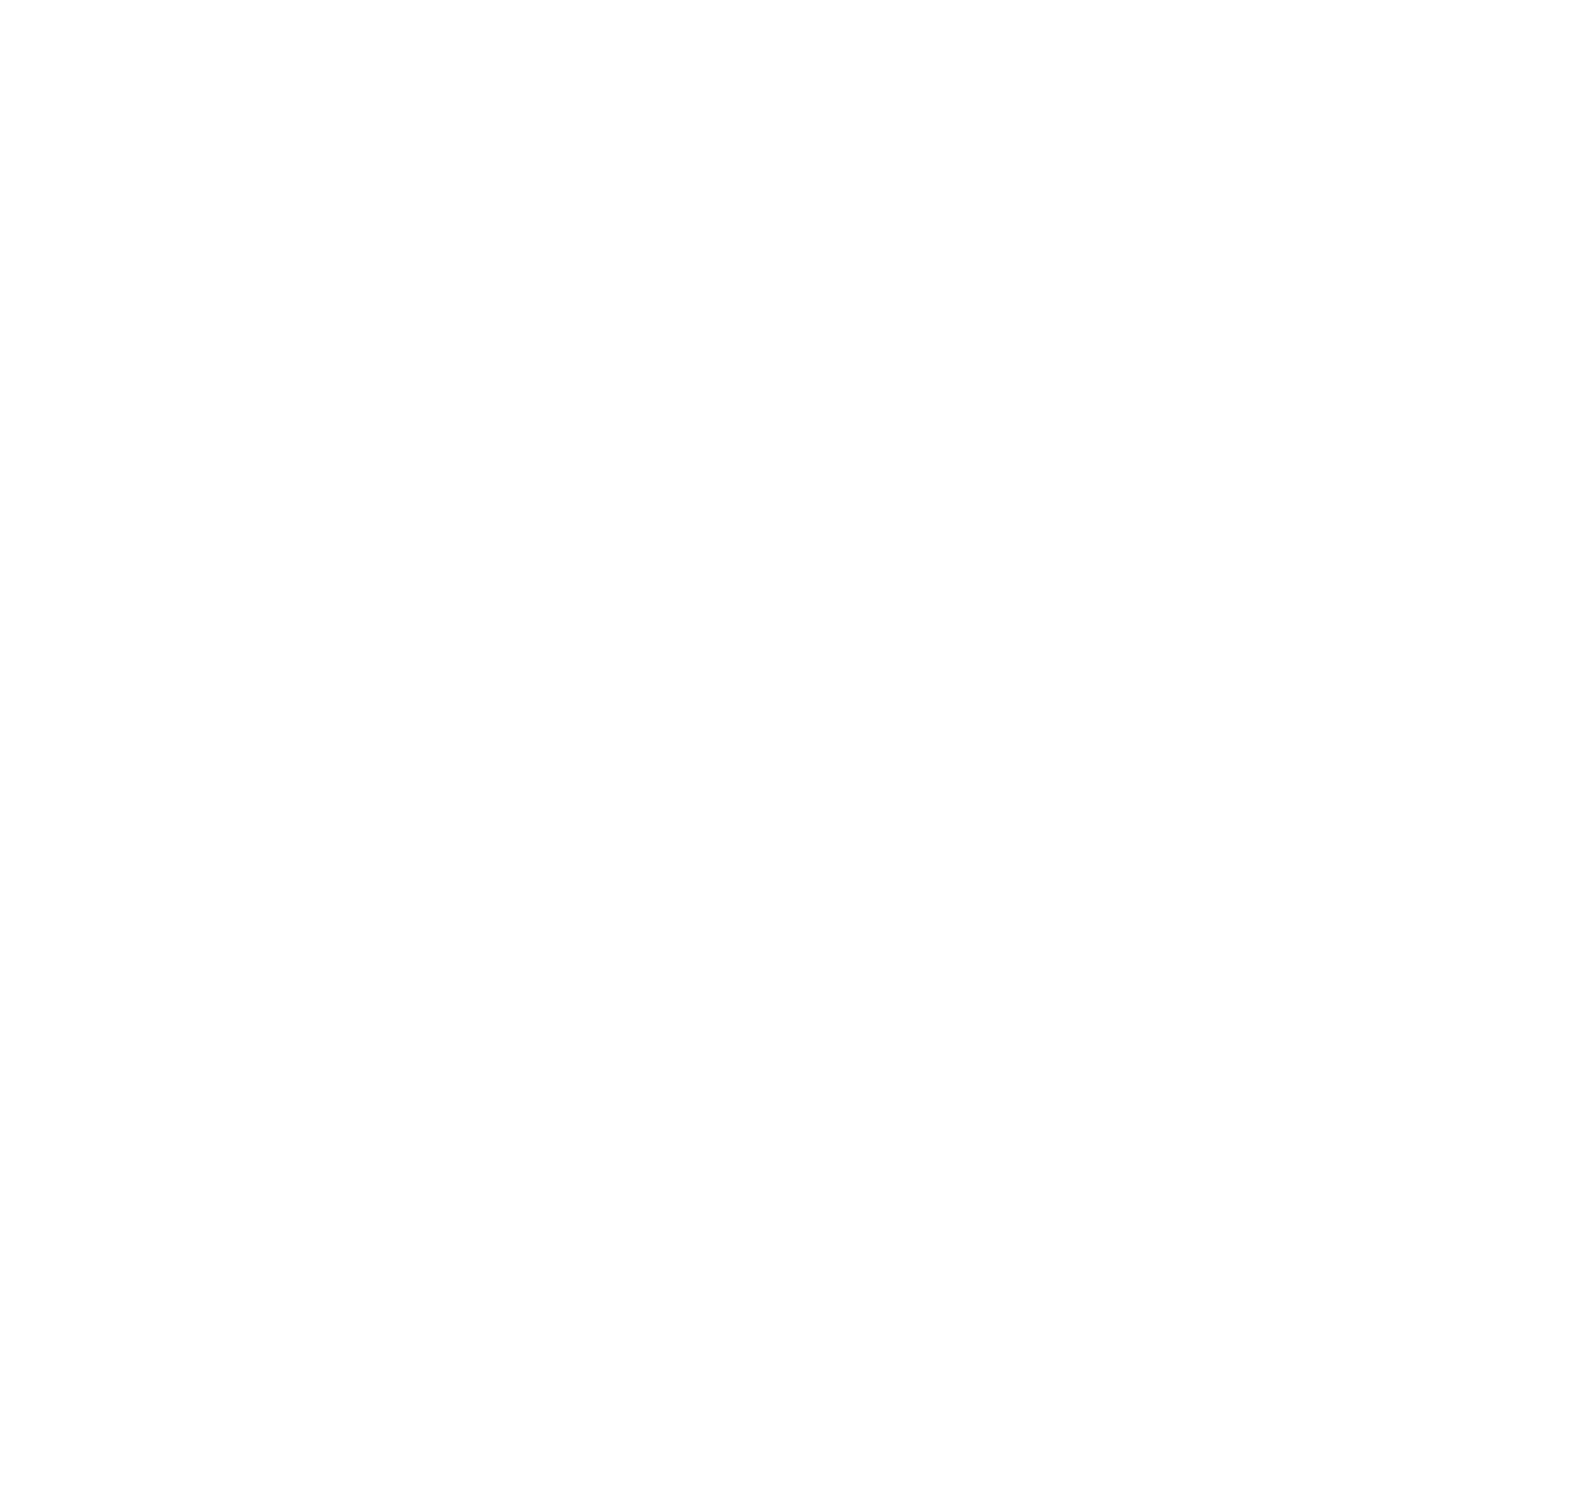 Banco Santander México logo pour fonds sombres (PNG transparent)